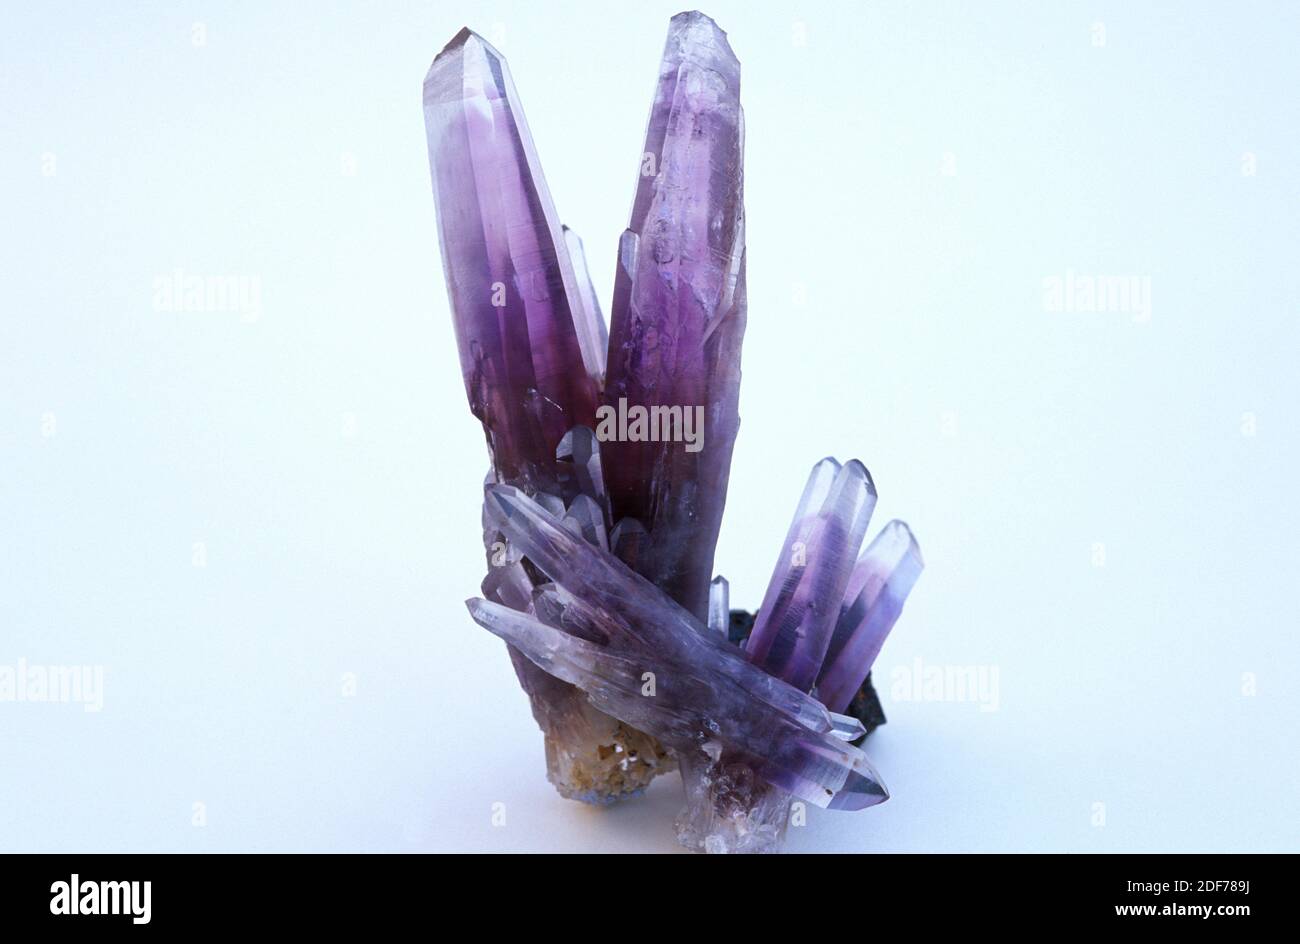 Cristales de amatista. Amatista es una variedad de cuarzo violete, violeta o púrpura se debe a la presencia de hierro. Foto de stock